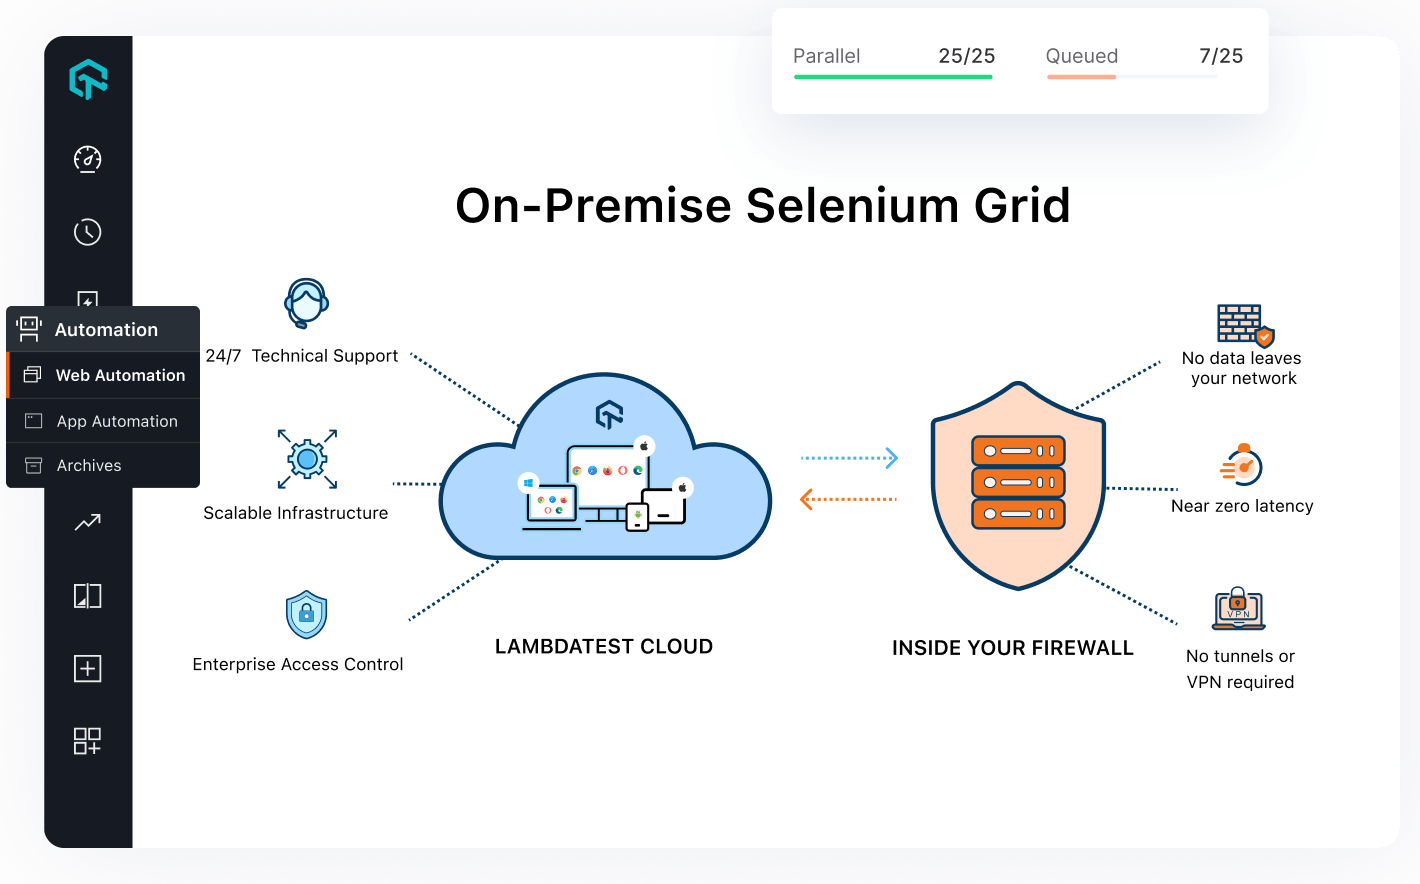 On-Premise Selenium Grid